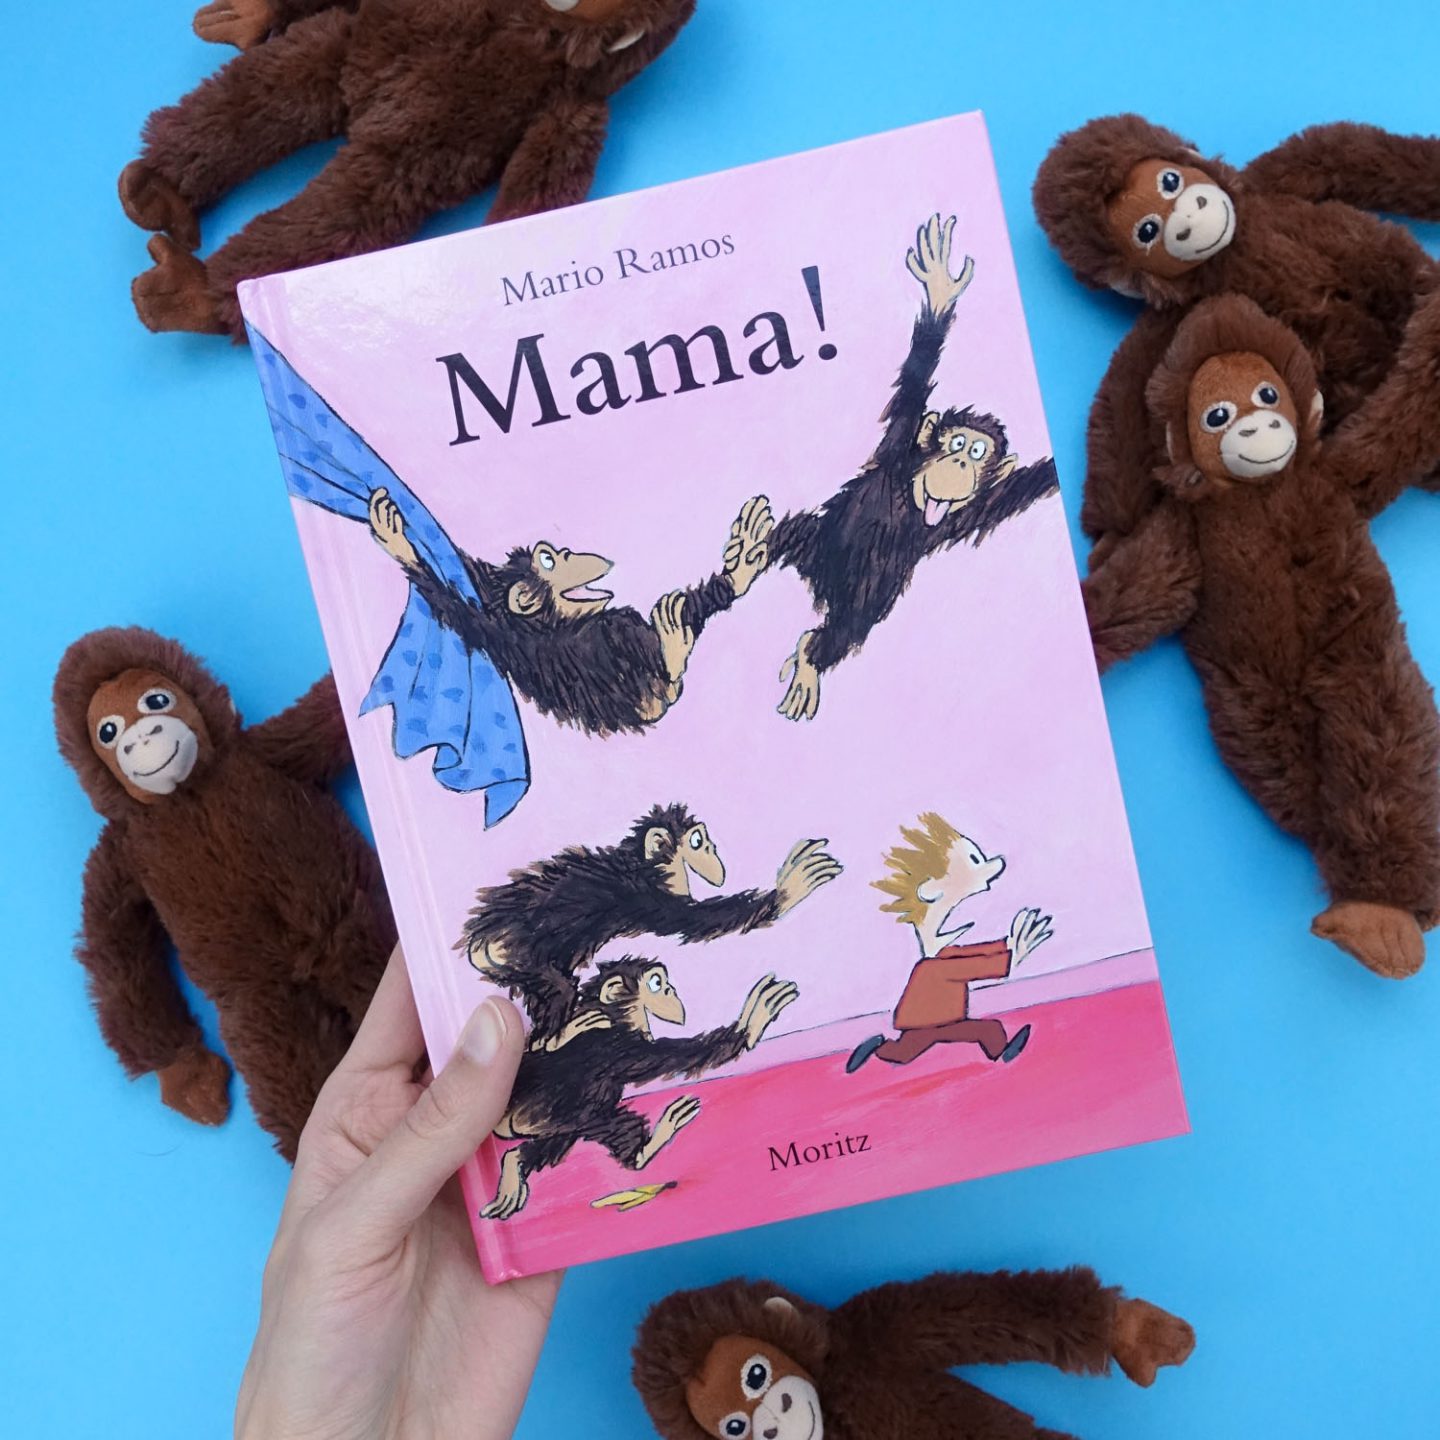 Bilderbuchtipp: Mama! von Mario Ramos // Mathe für Mamas